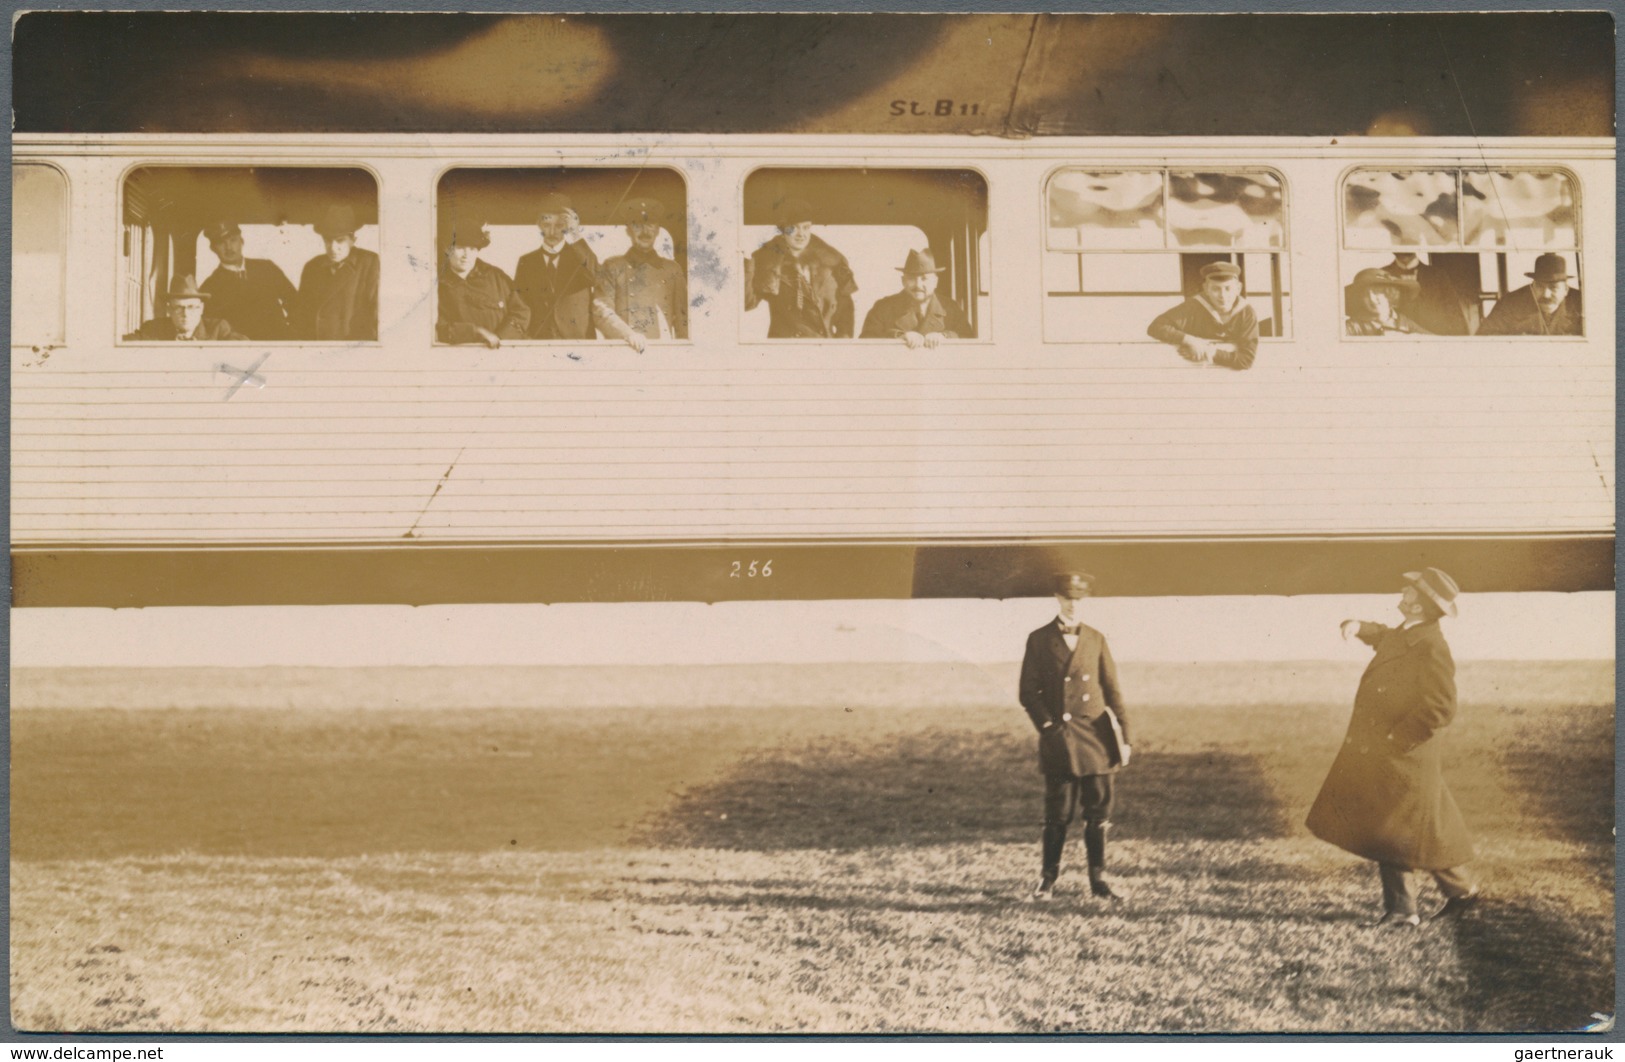 Zeppelinpost Deutschland: 1913. Original Real Photo RPPC Of Passengers In The Gondola Of The Pioneer - Luft- Und Zeppelinpost